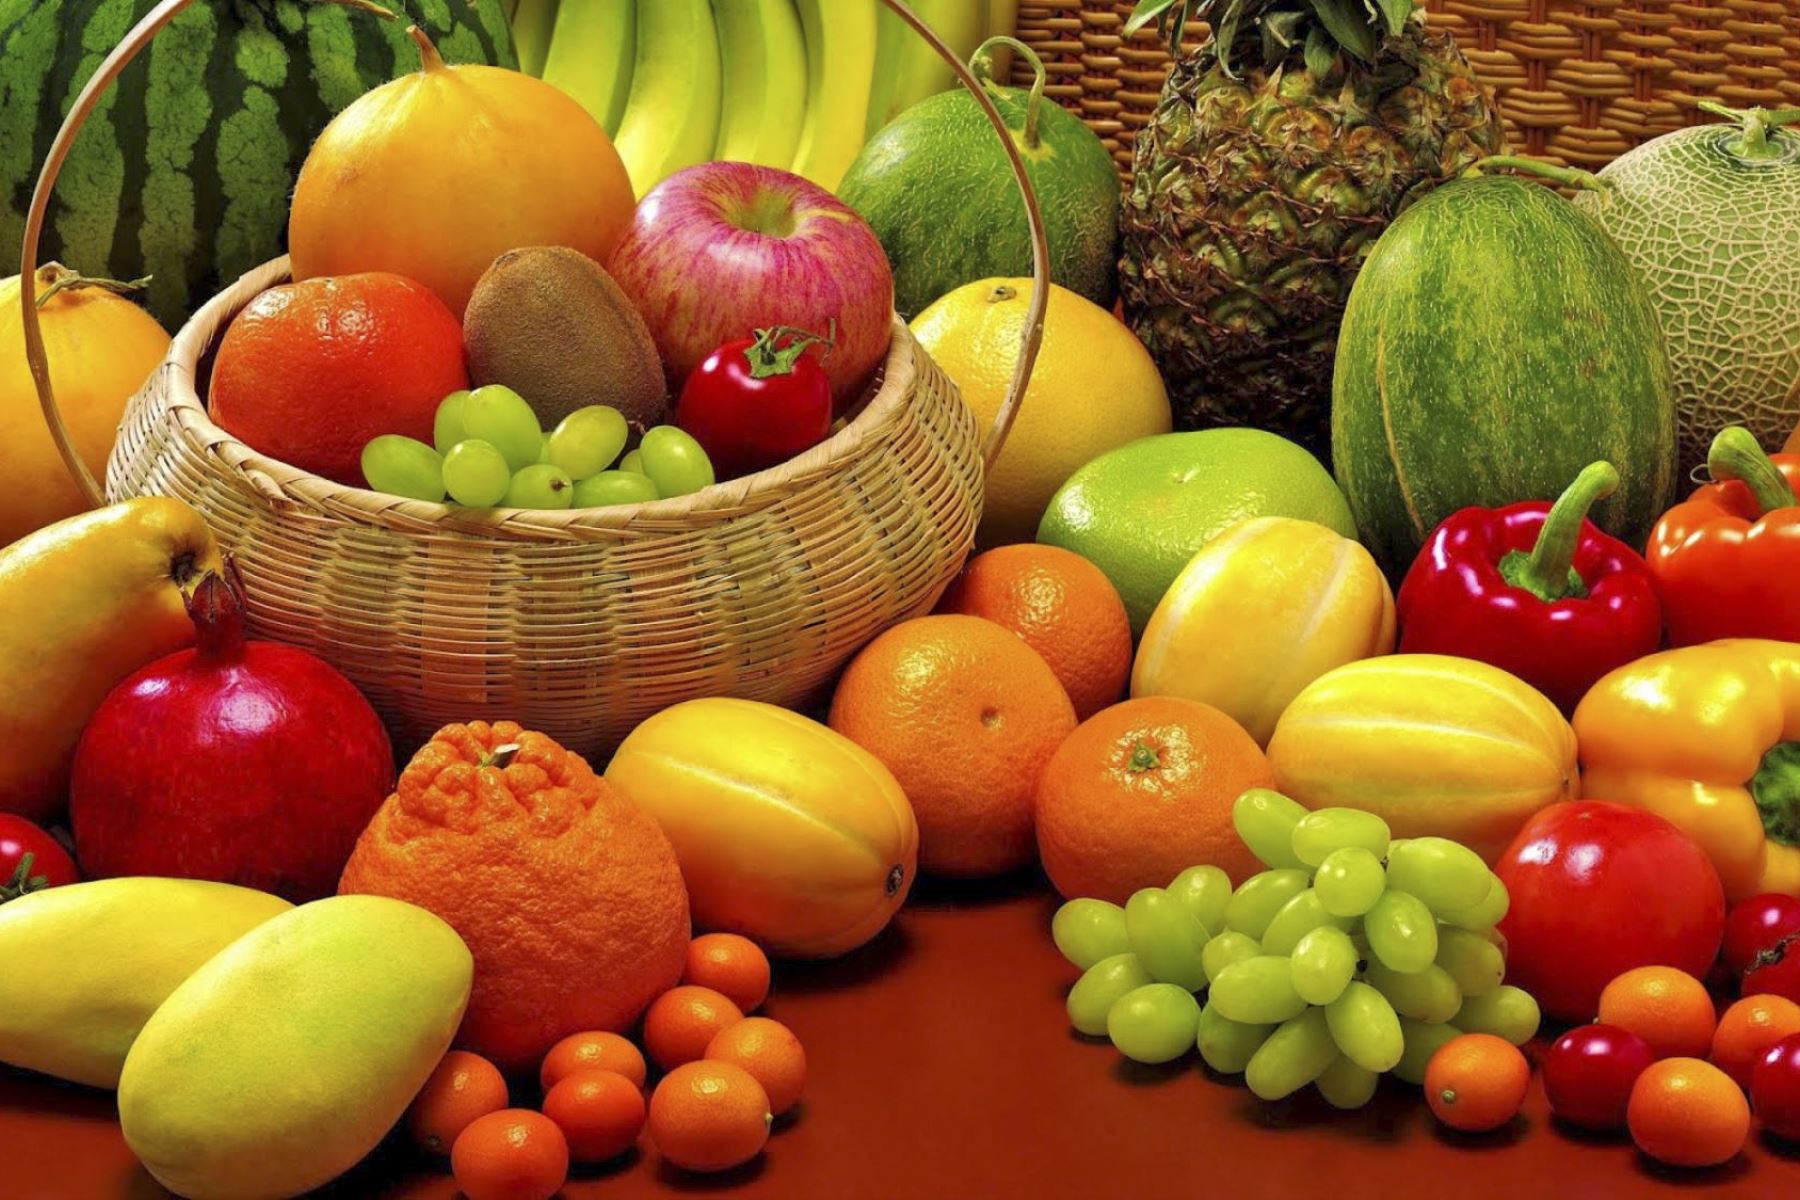 El consumo frecuente de frutas y verduras contribuye al fortalecimiento de las defensas de nuestro organismo gracias a su gran aporte de vitaminas, minerales, fibra, entre otros nutrientes. ANDINA/Difusión